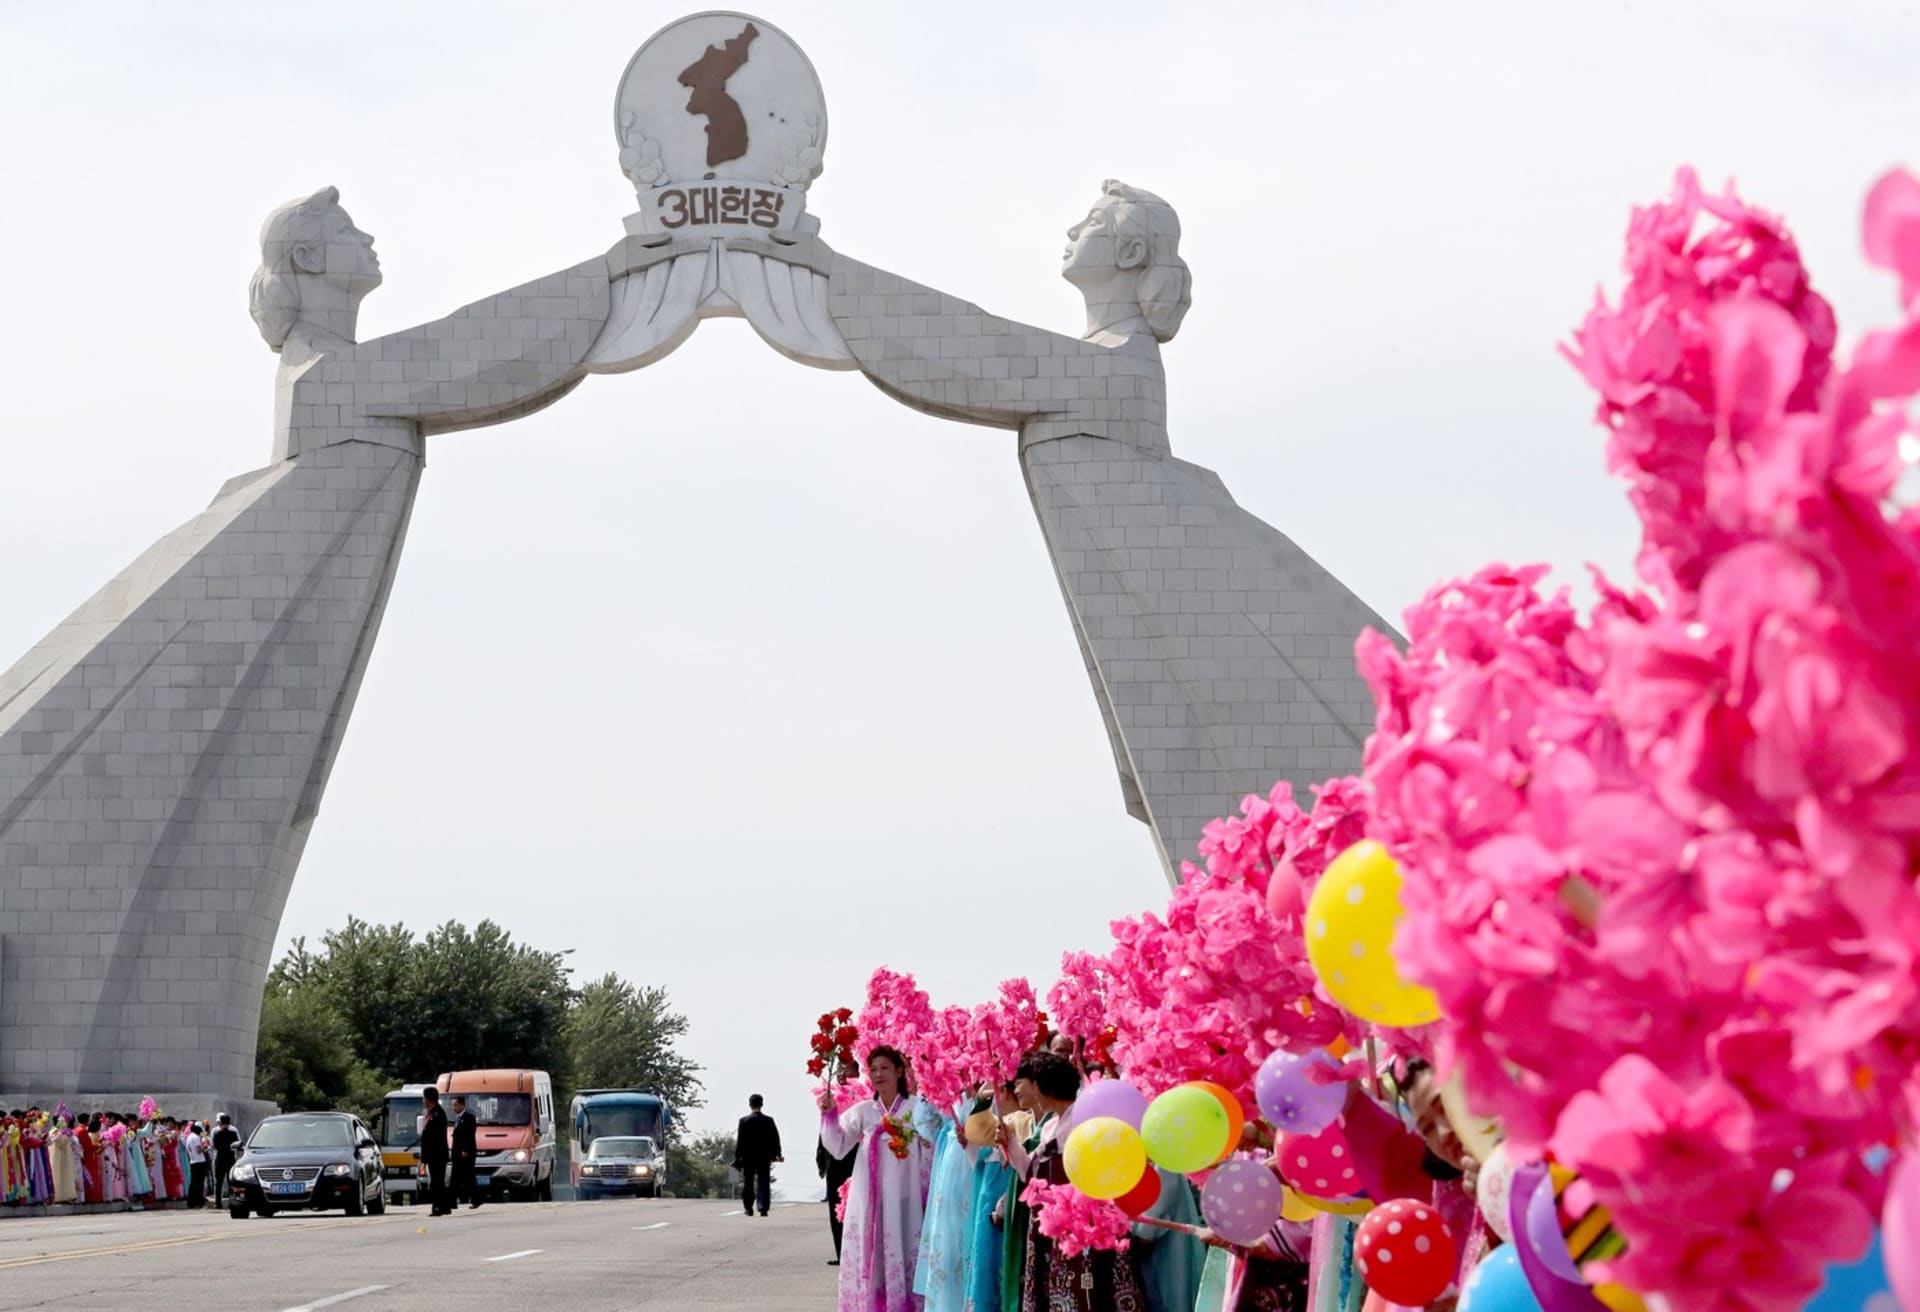 Monumentální oblouk sjednocení v severokorejském Pchjongjangu byl v lednu odstraněn.